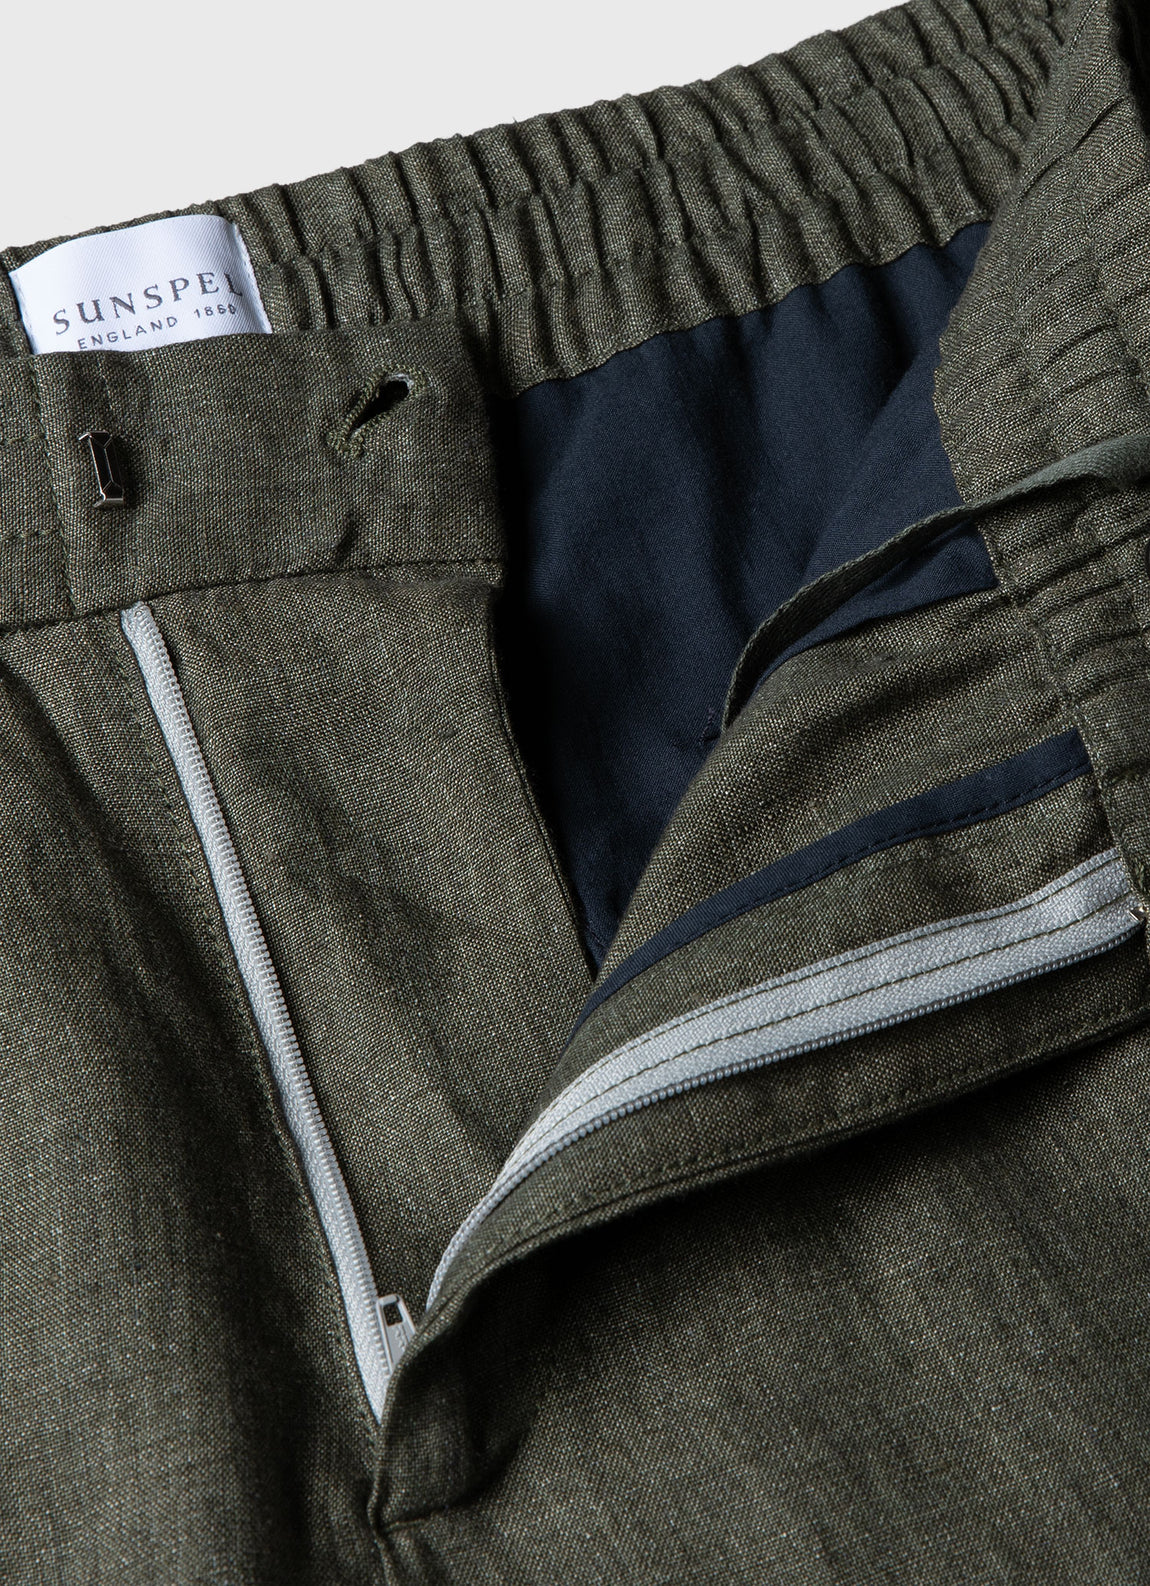 Men's Linen Drawstring Trouser in Light Khaki